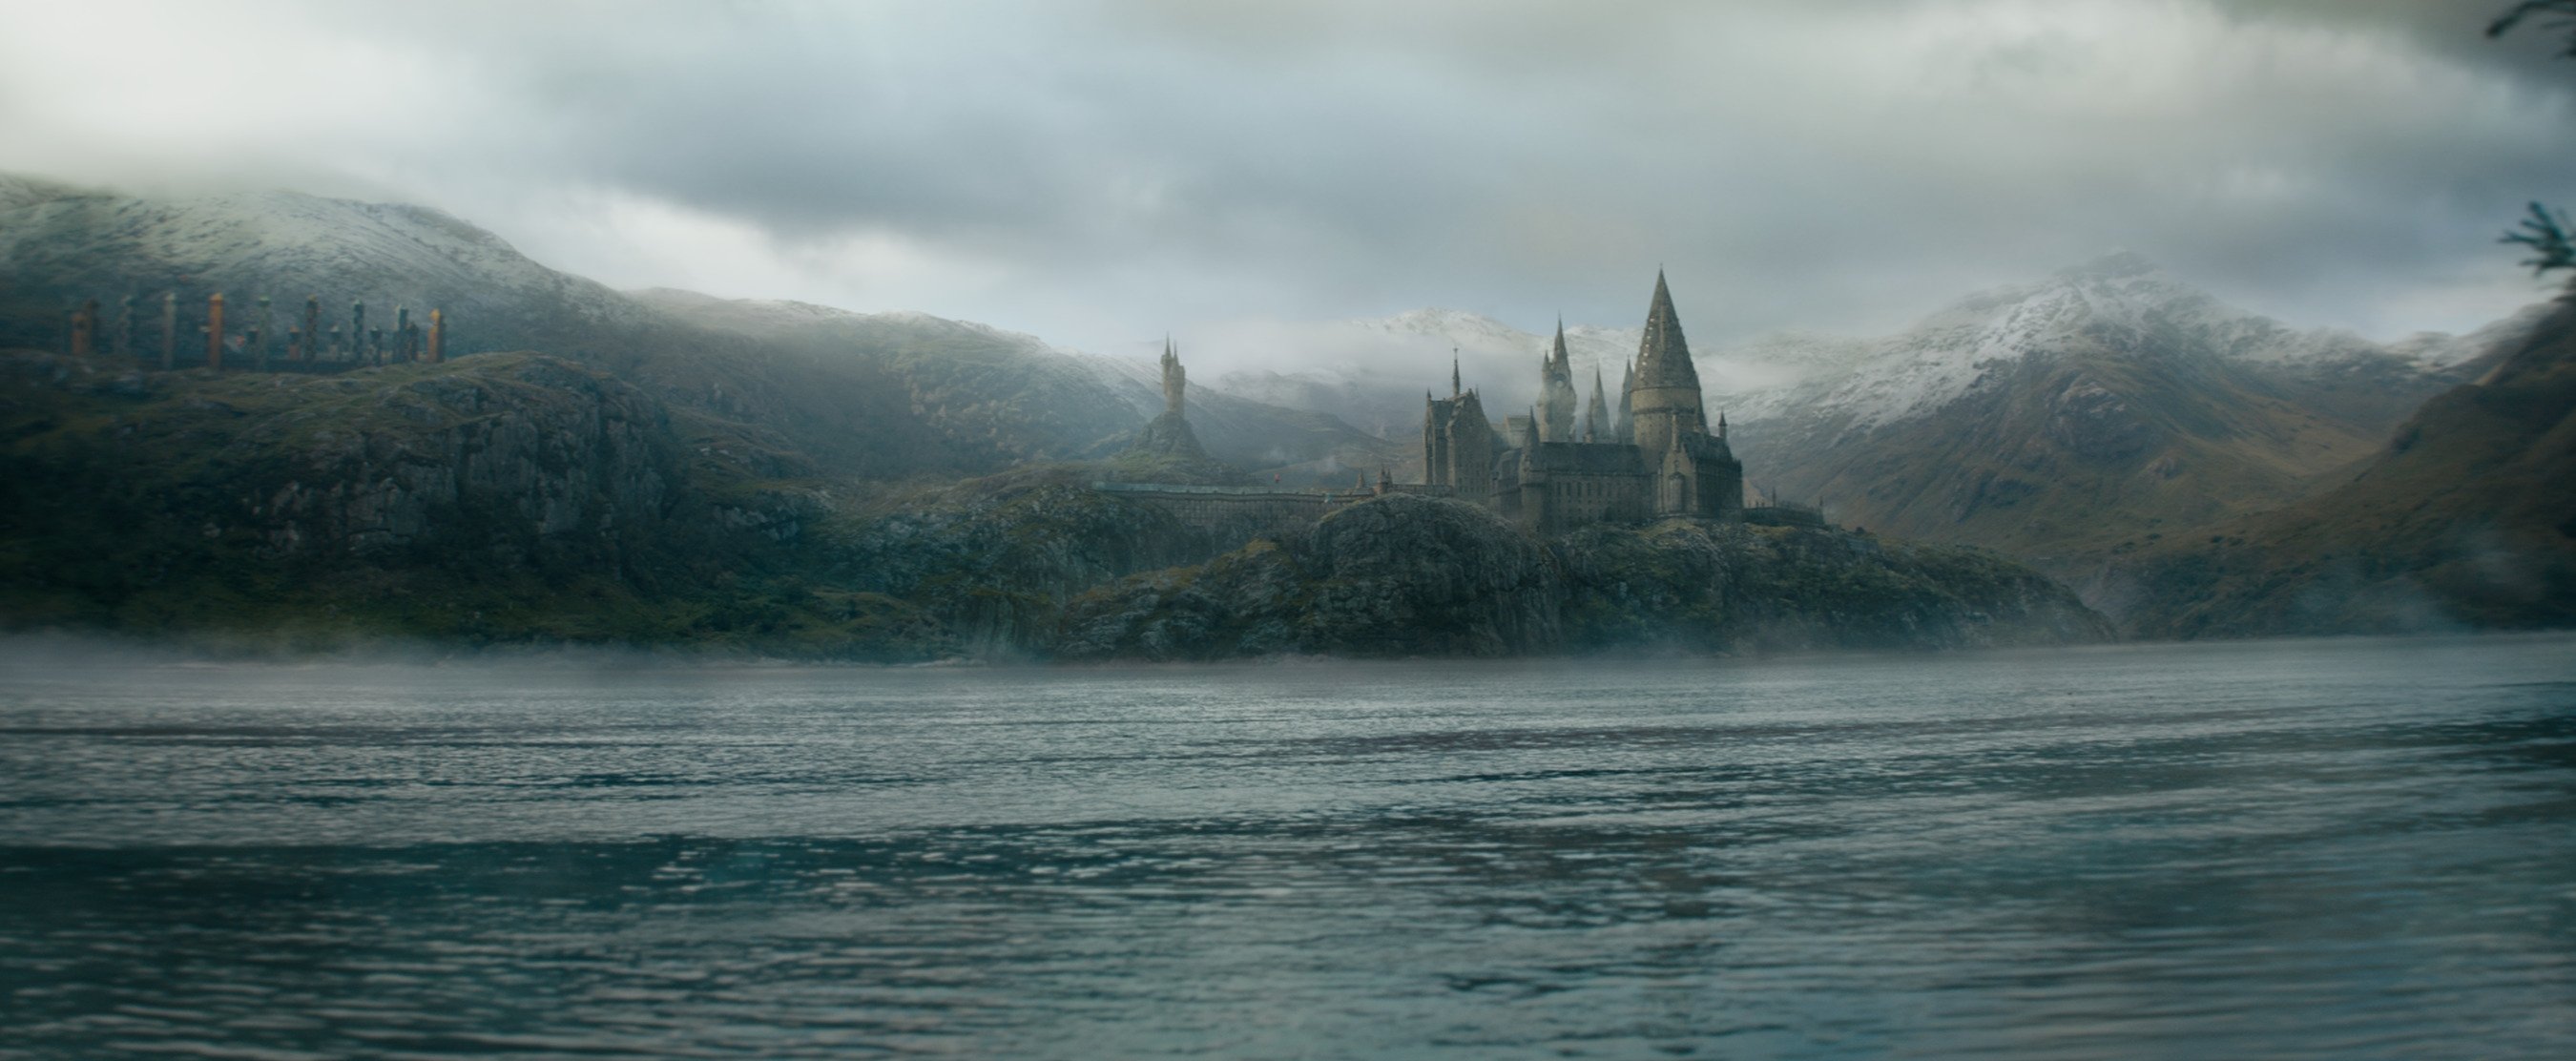 No secrets in 'Fantastic Beasts: The Secrets of Dumbledore' | Daily Sabah